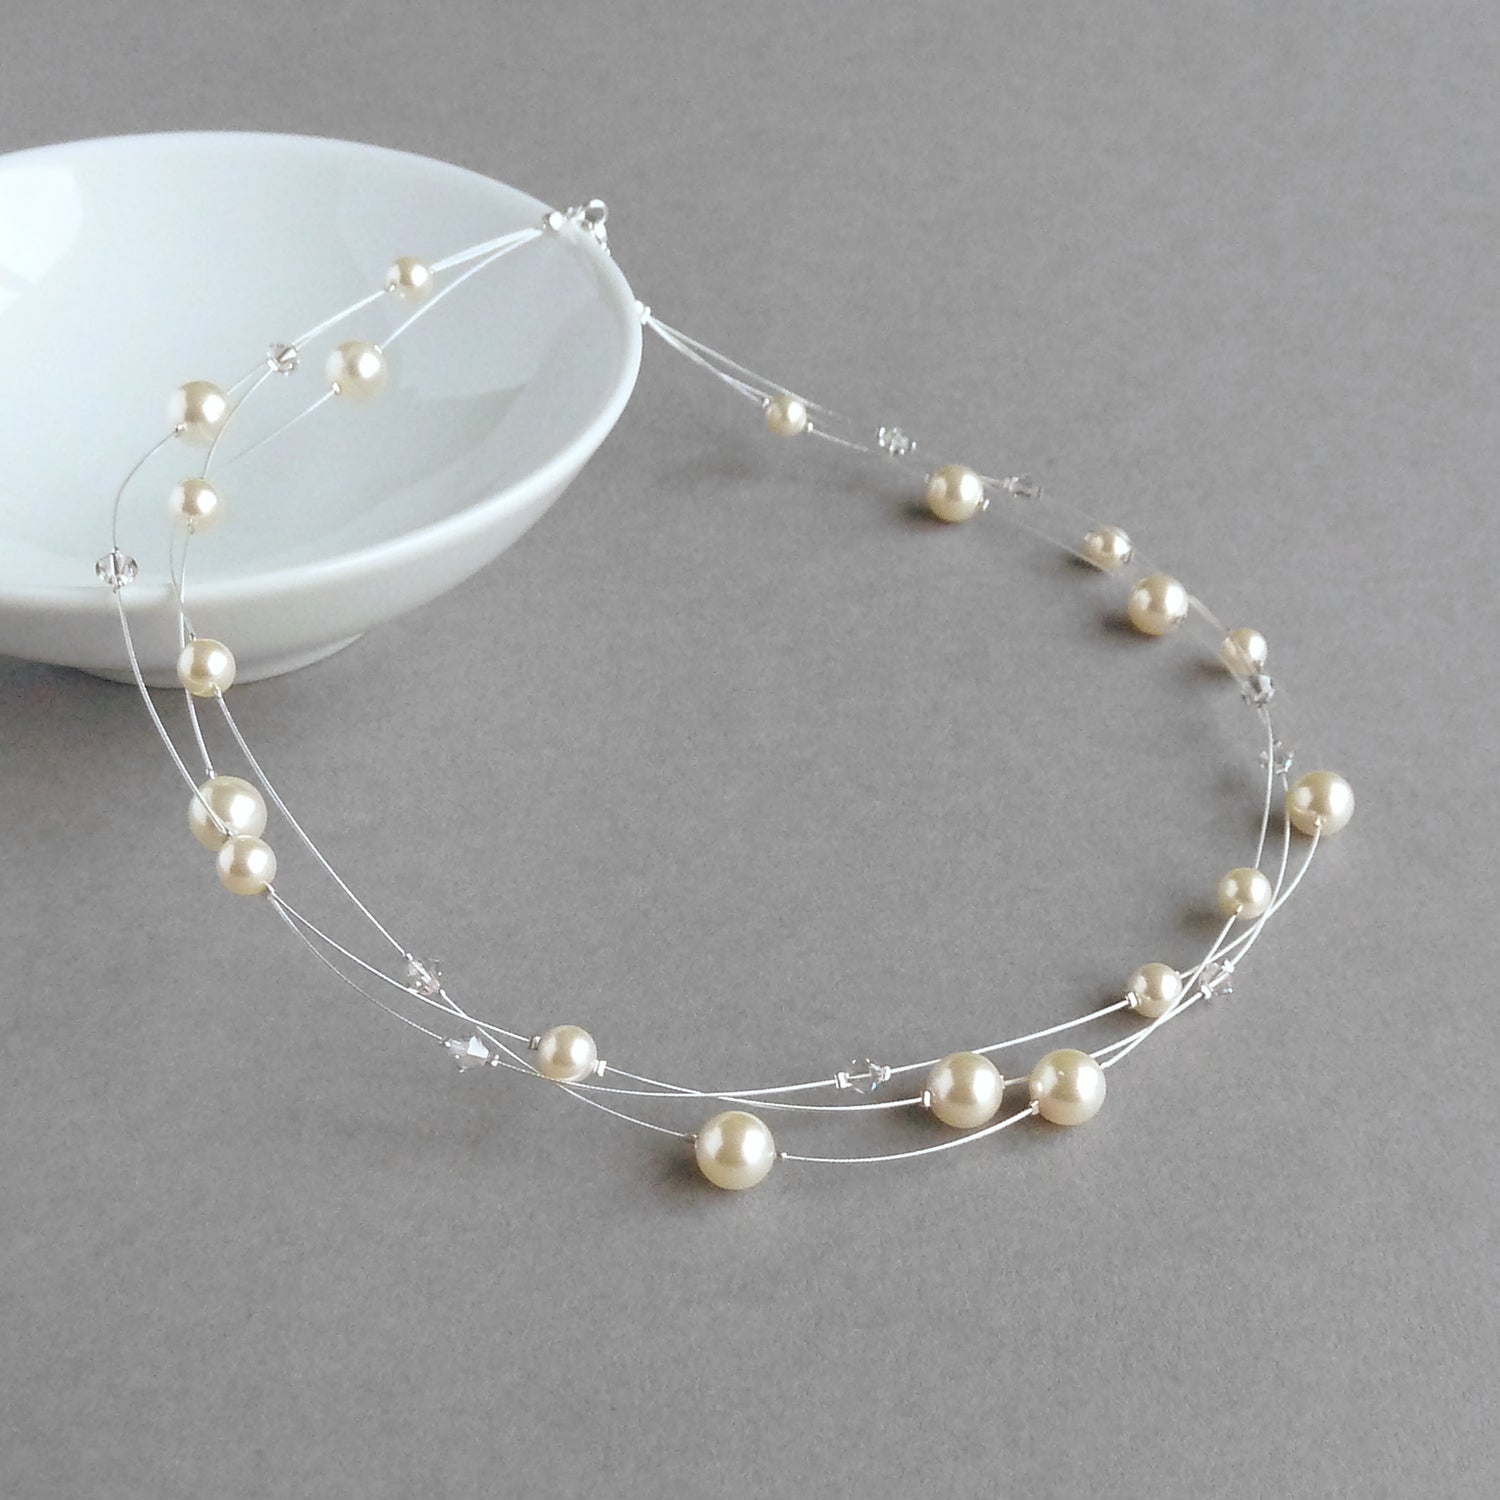 Cream pearl bridal necklaces